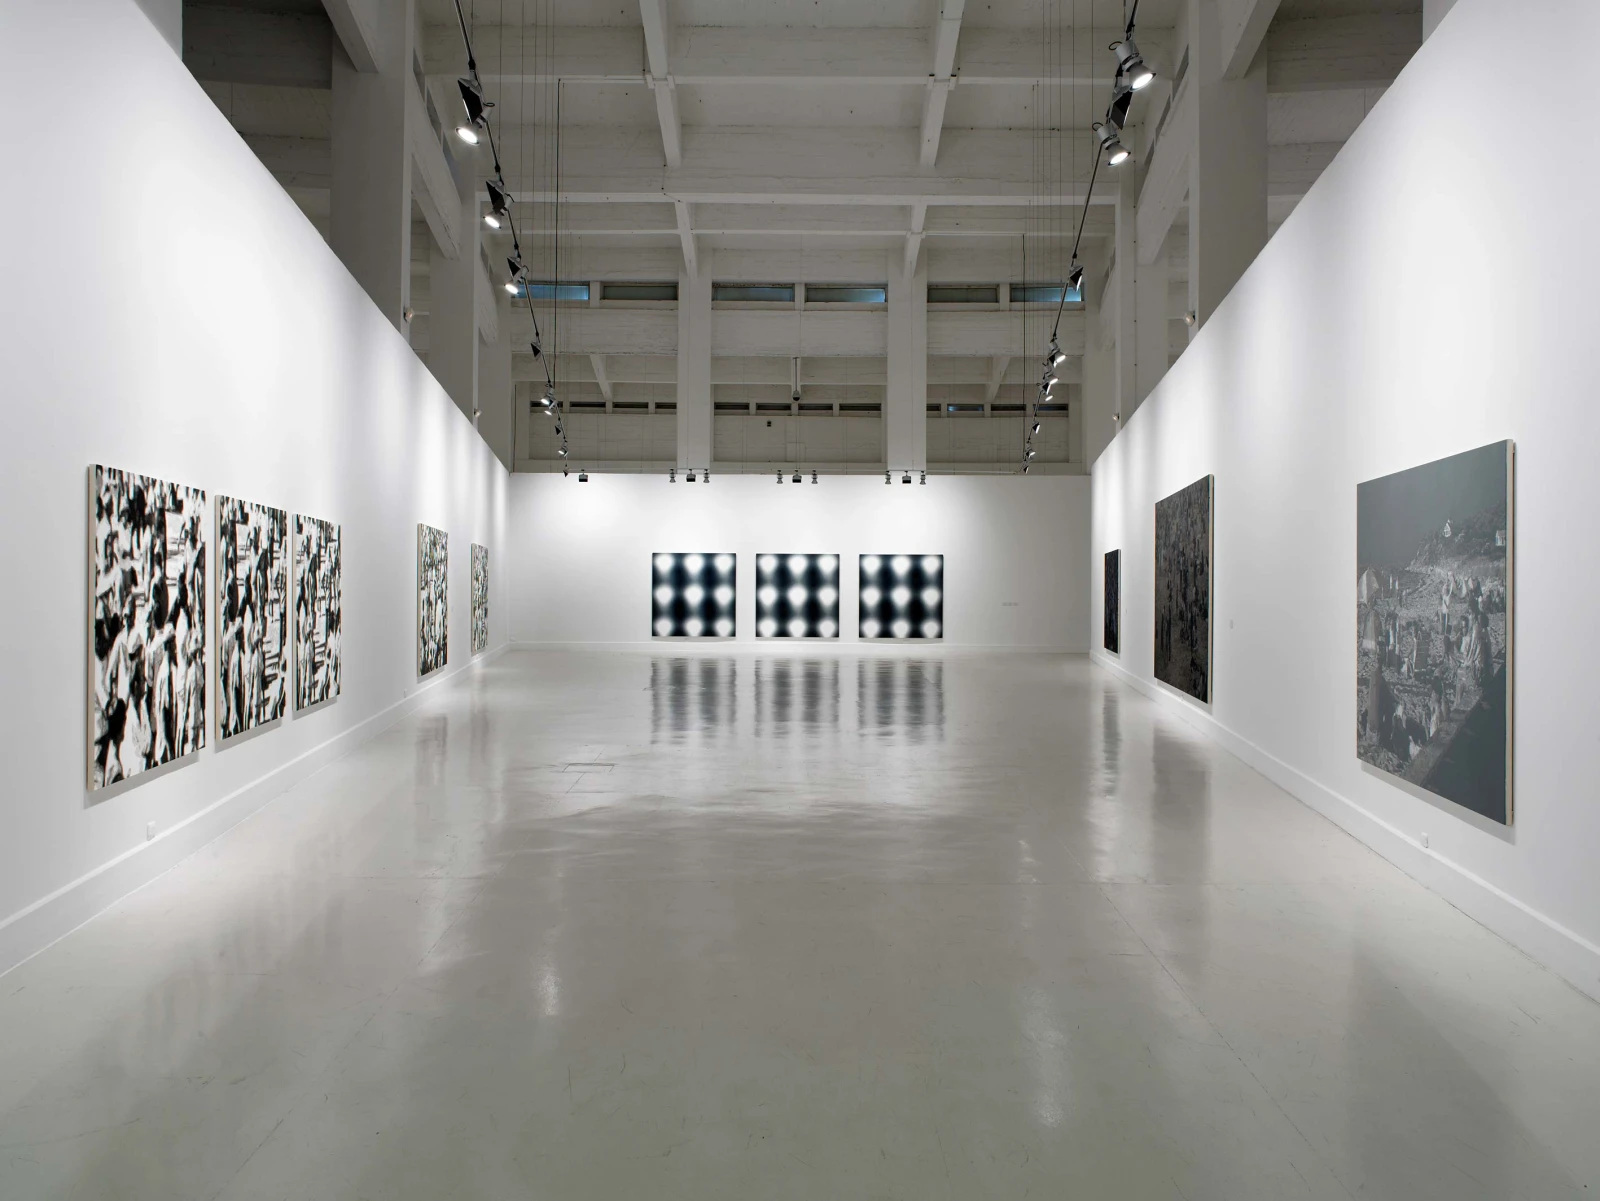 <p>Installation view: Wayne Gonzales, CAC Malága, Malága (2011).</p>